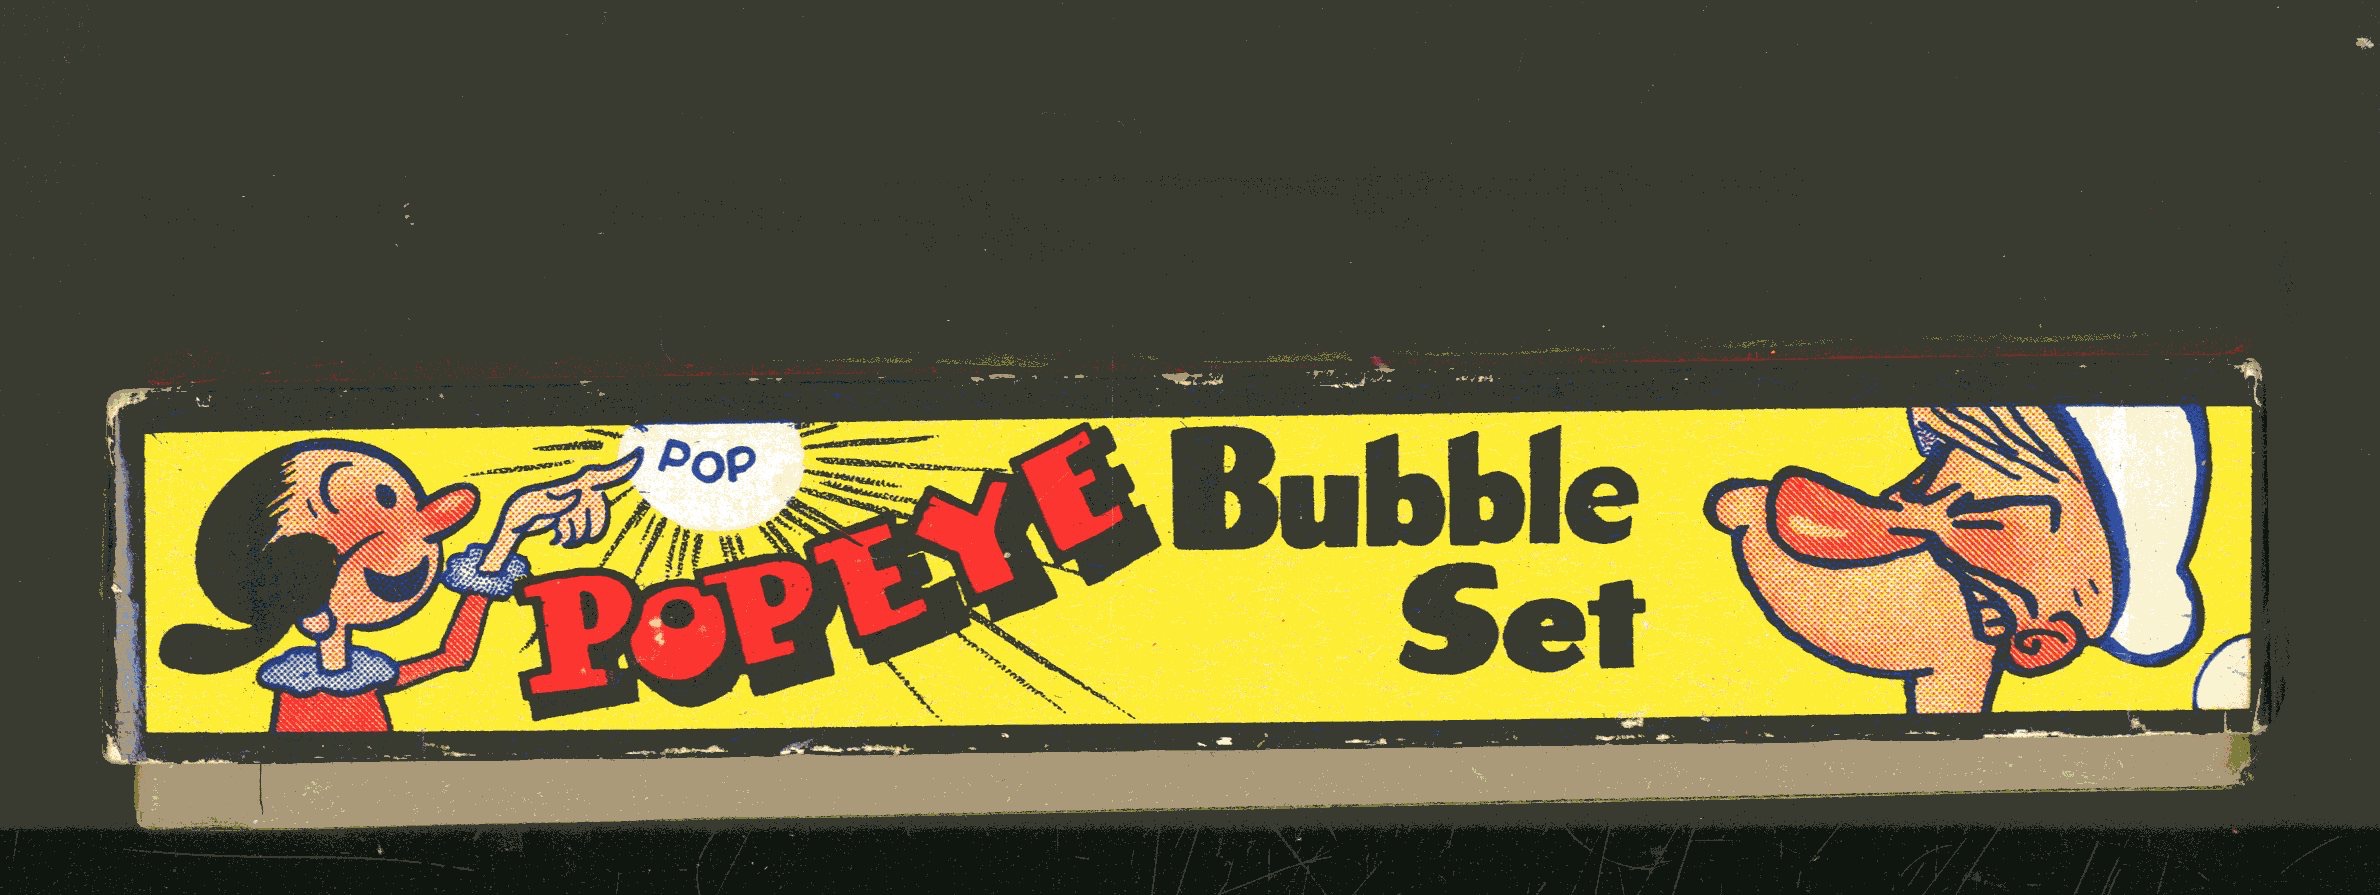 Popeye Bubble Set - 21402